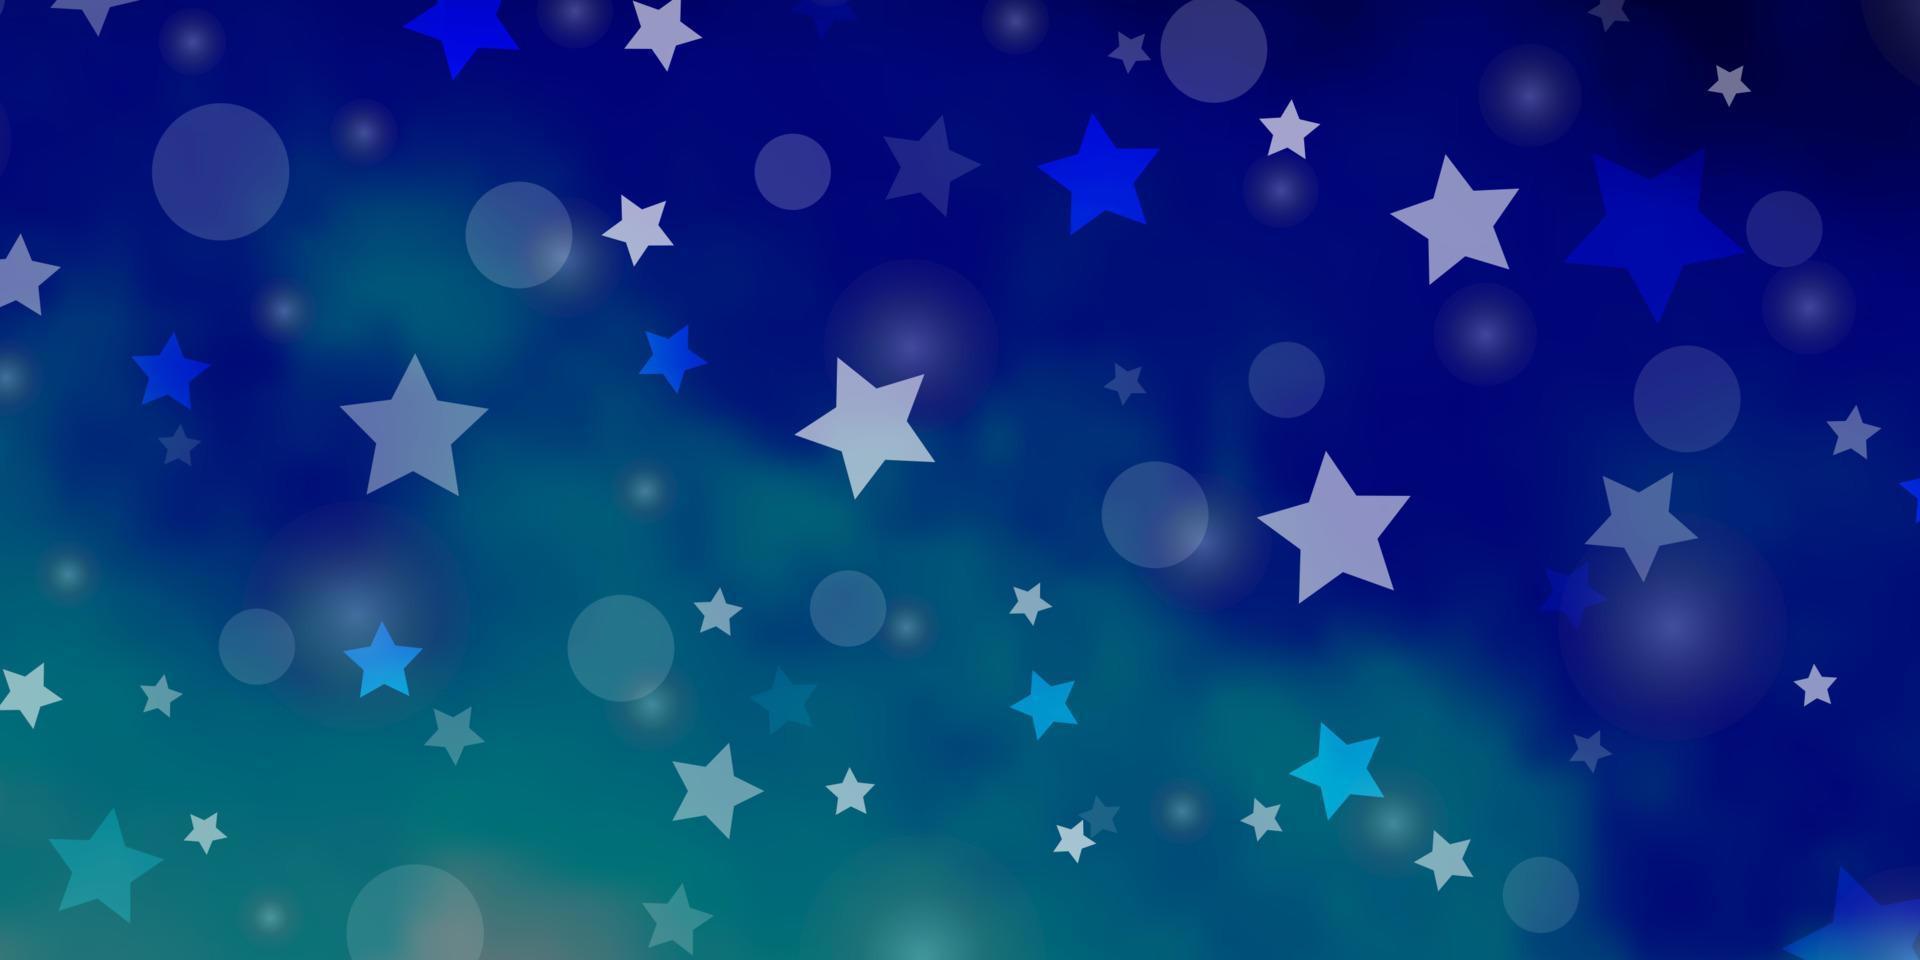 lichtblauw vector sjabloon met cirkels, sterren.